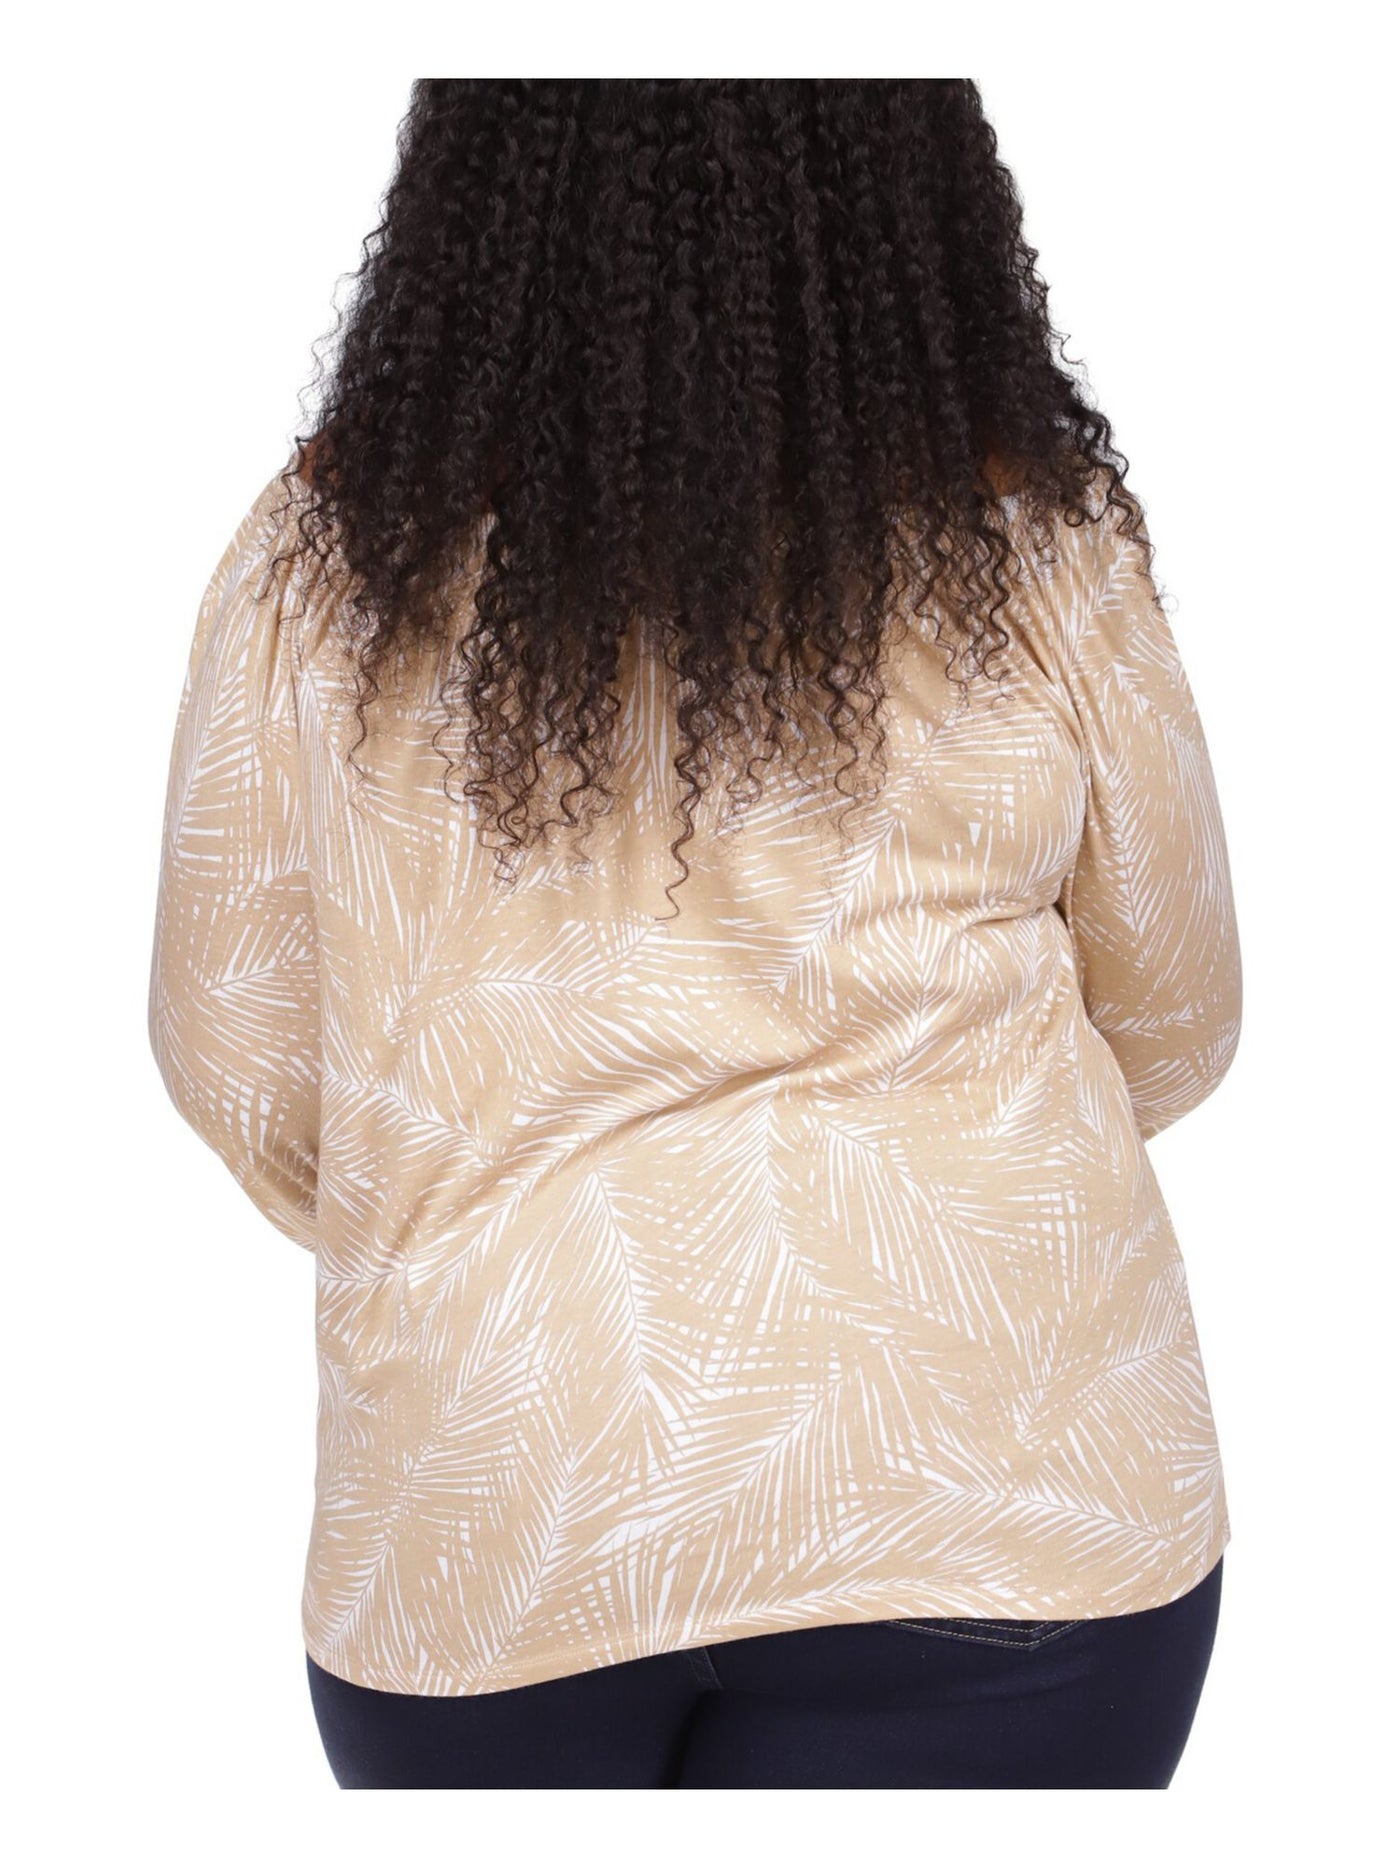 MICHAEL KORS Womens Beige Tie Sheer Logo Tab Printed 3/4 Sleeve Round Neck Top Plus 3X